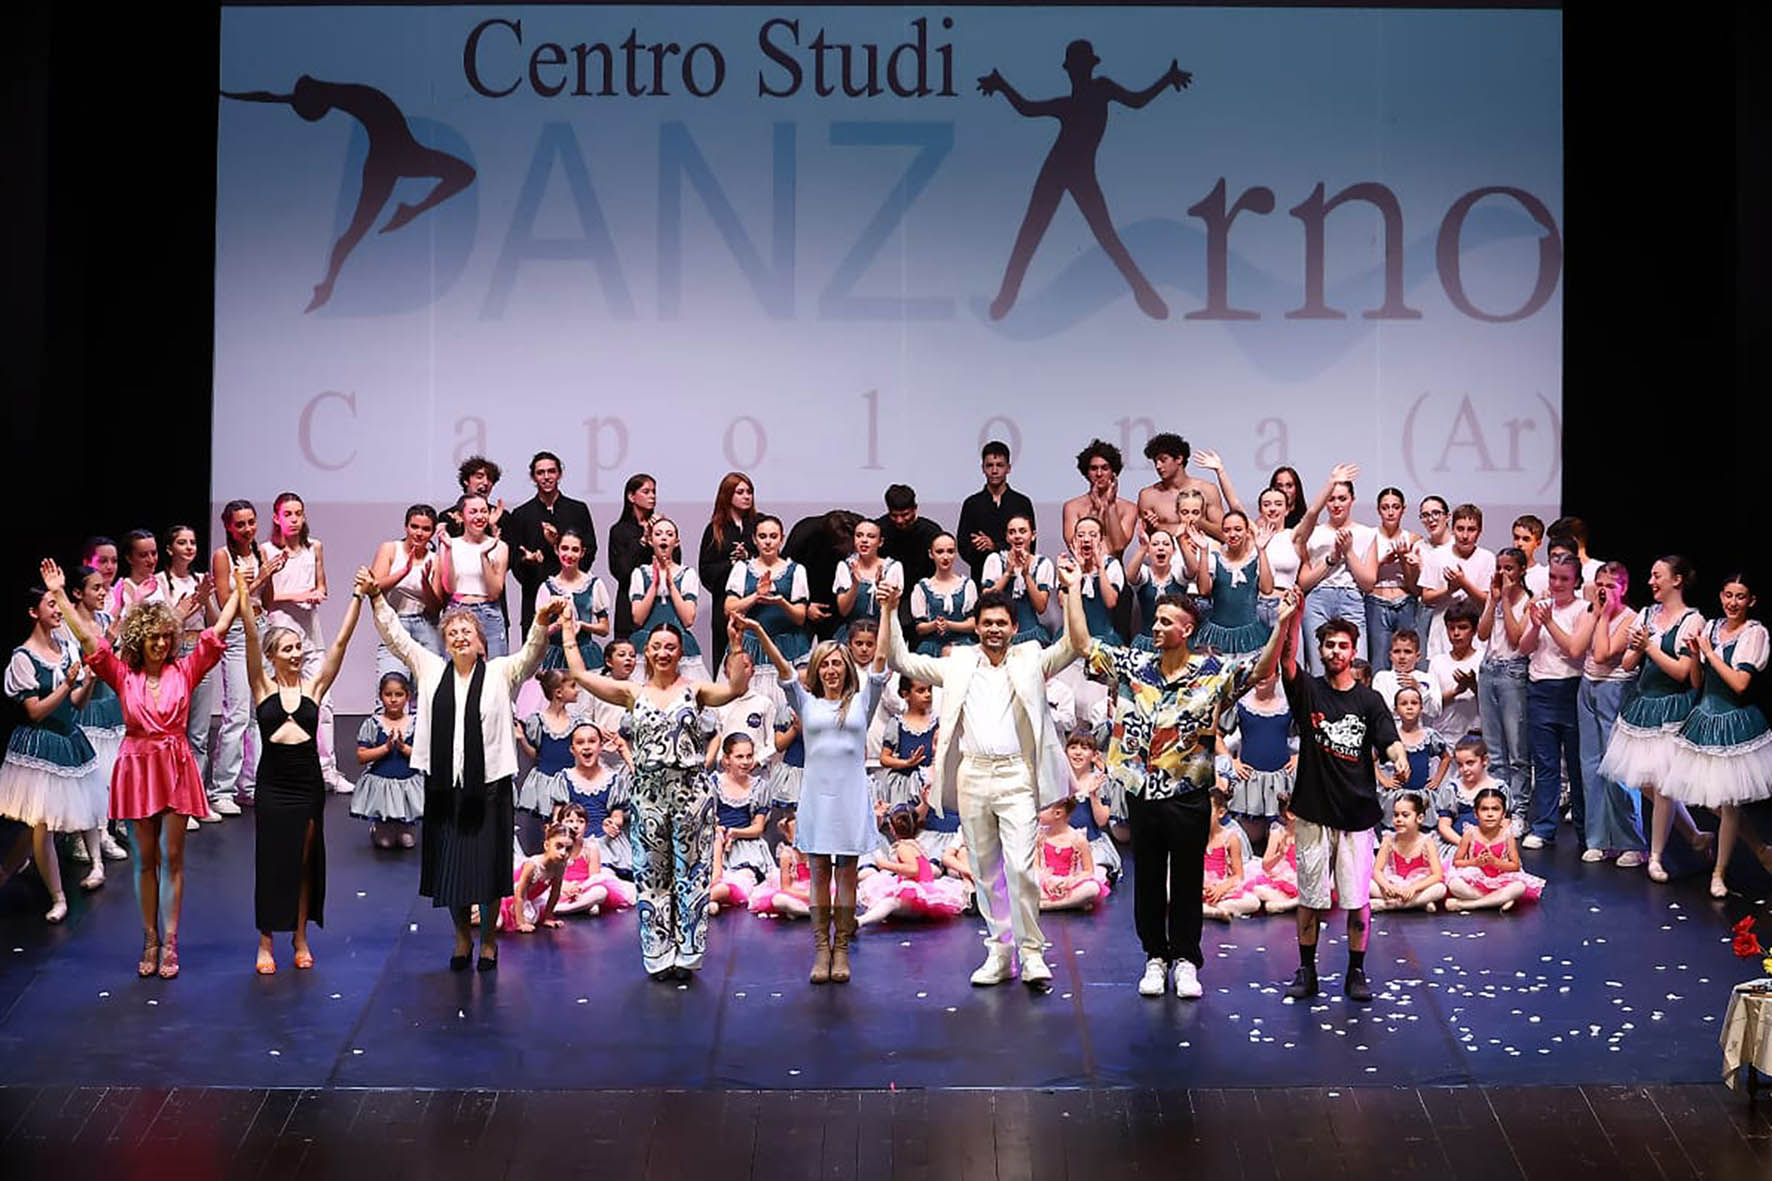 A Capolona un festival della danza per i quindici anni del centro studi DanzArno